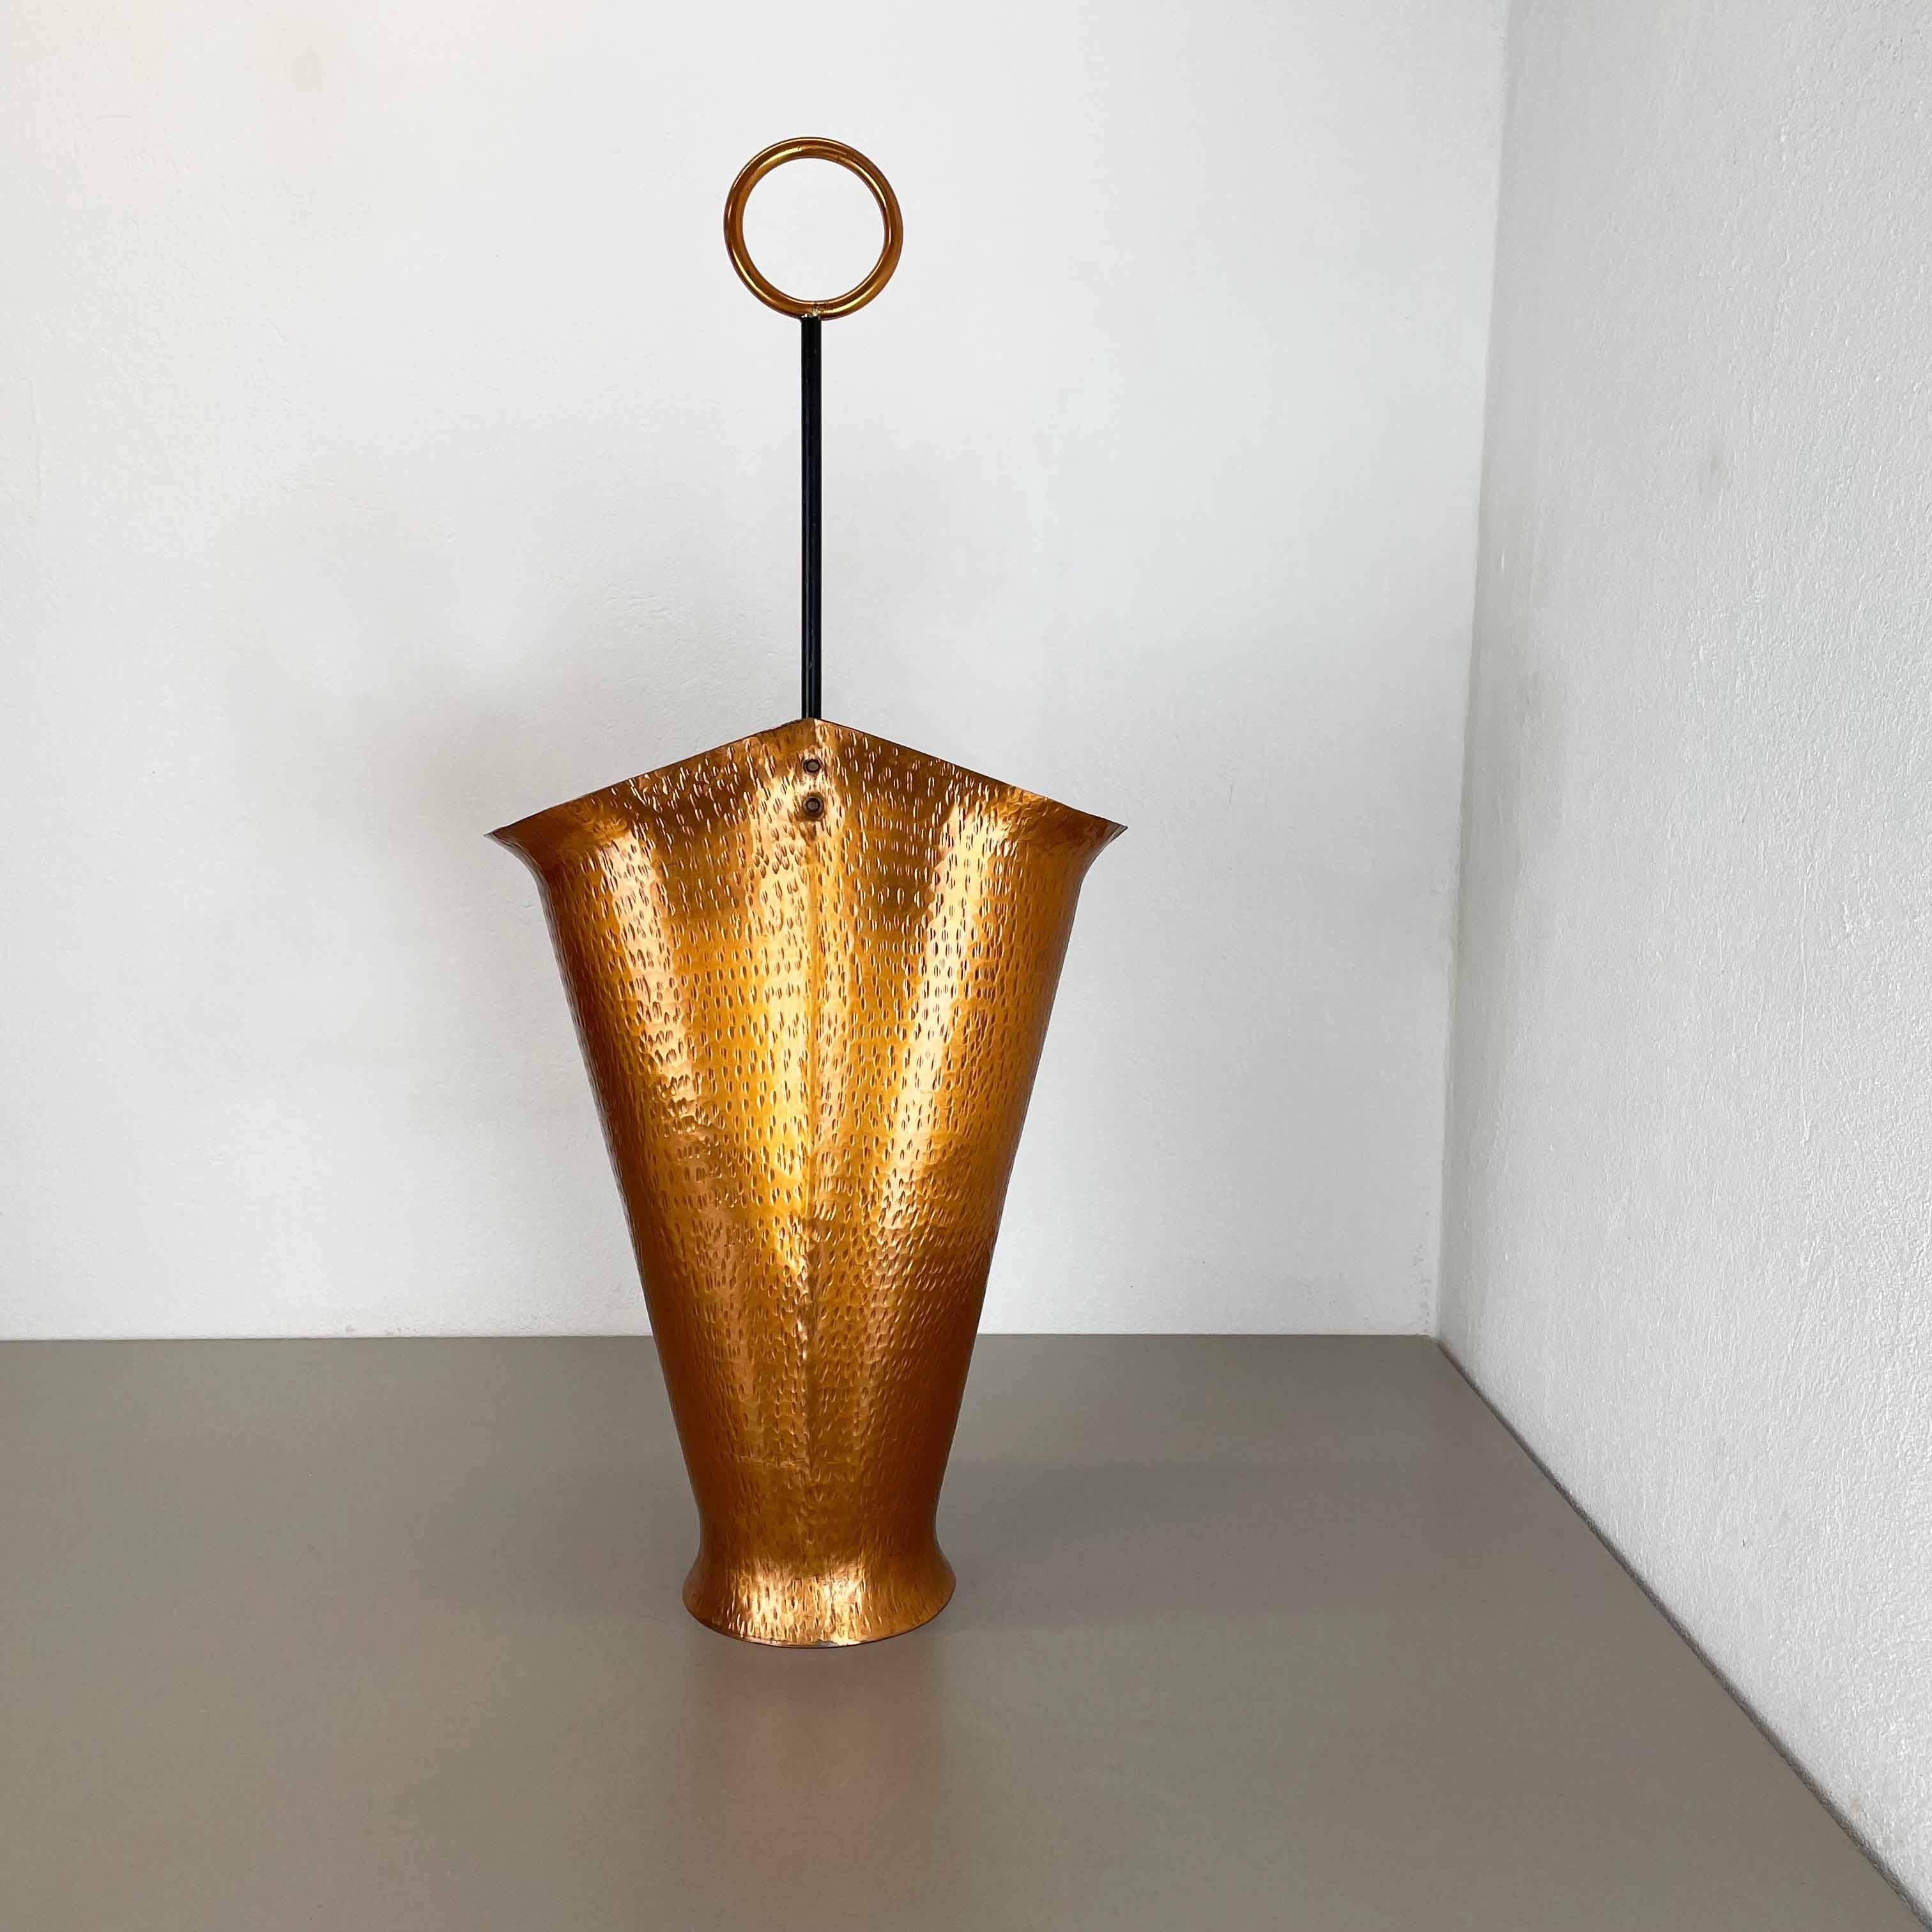 Bauhaus Original Metal Copper Brutalist Hollywood Regency Umbrella Stand Germany, 1970s For Sale